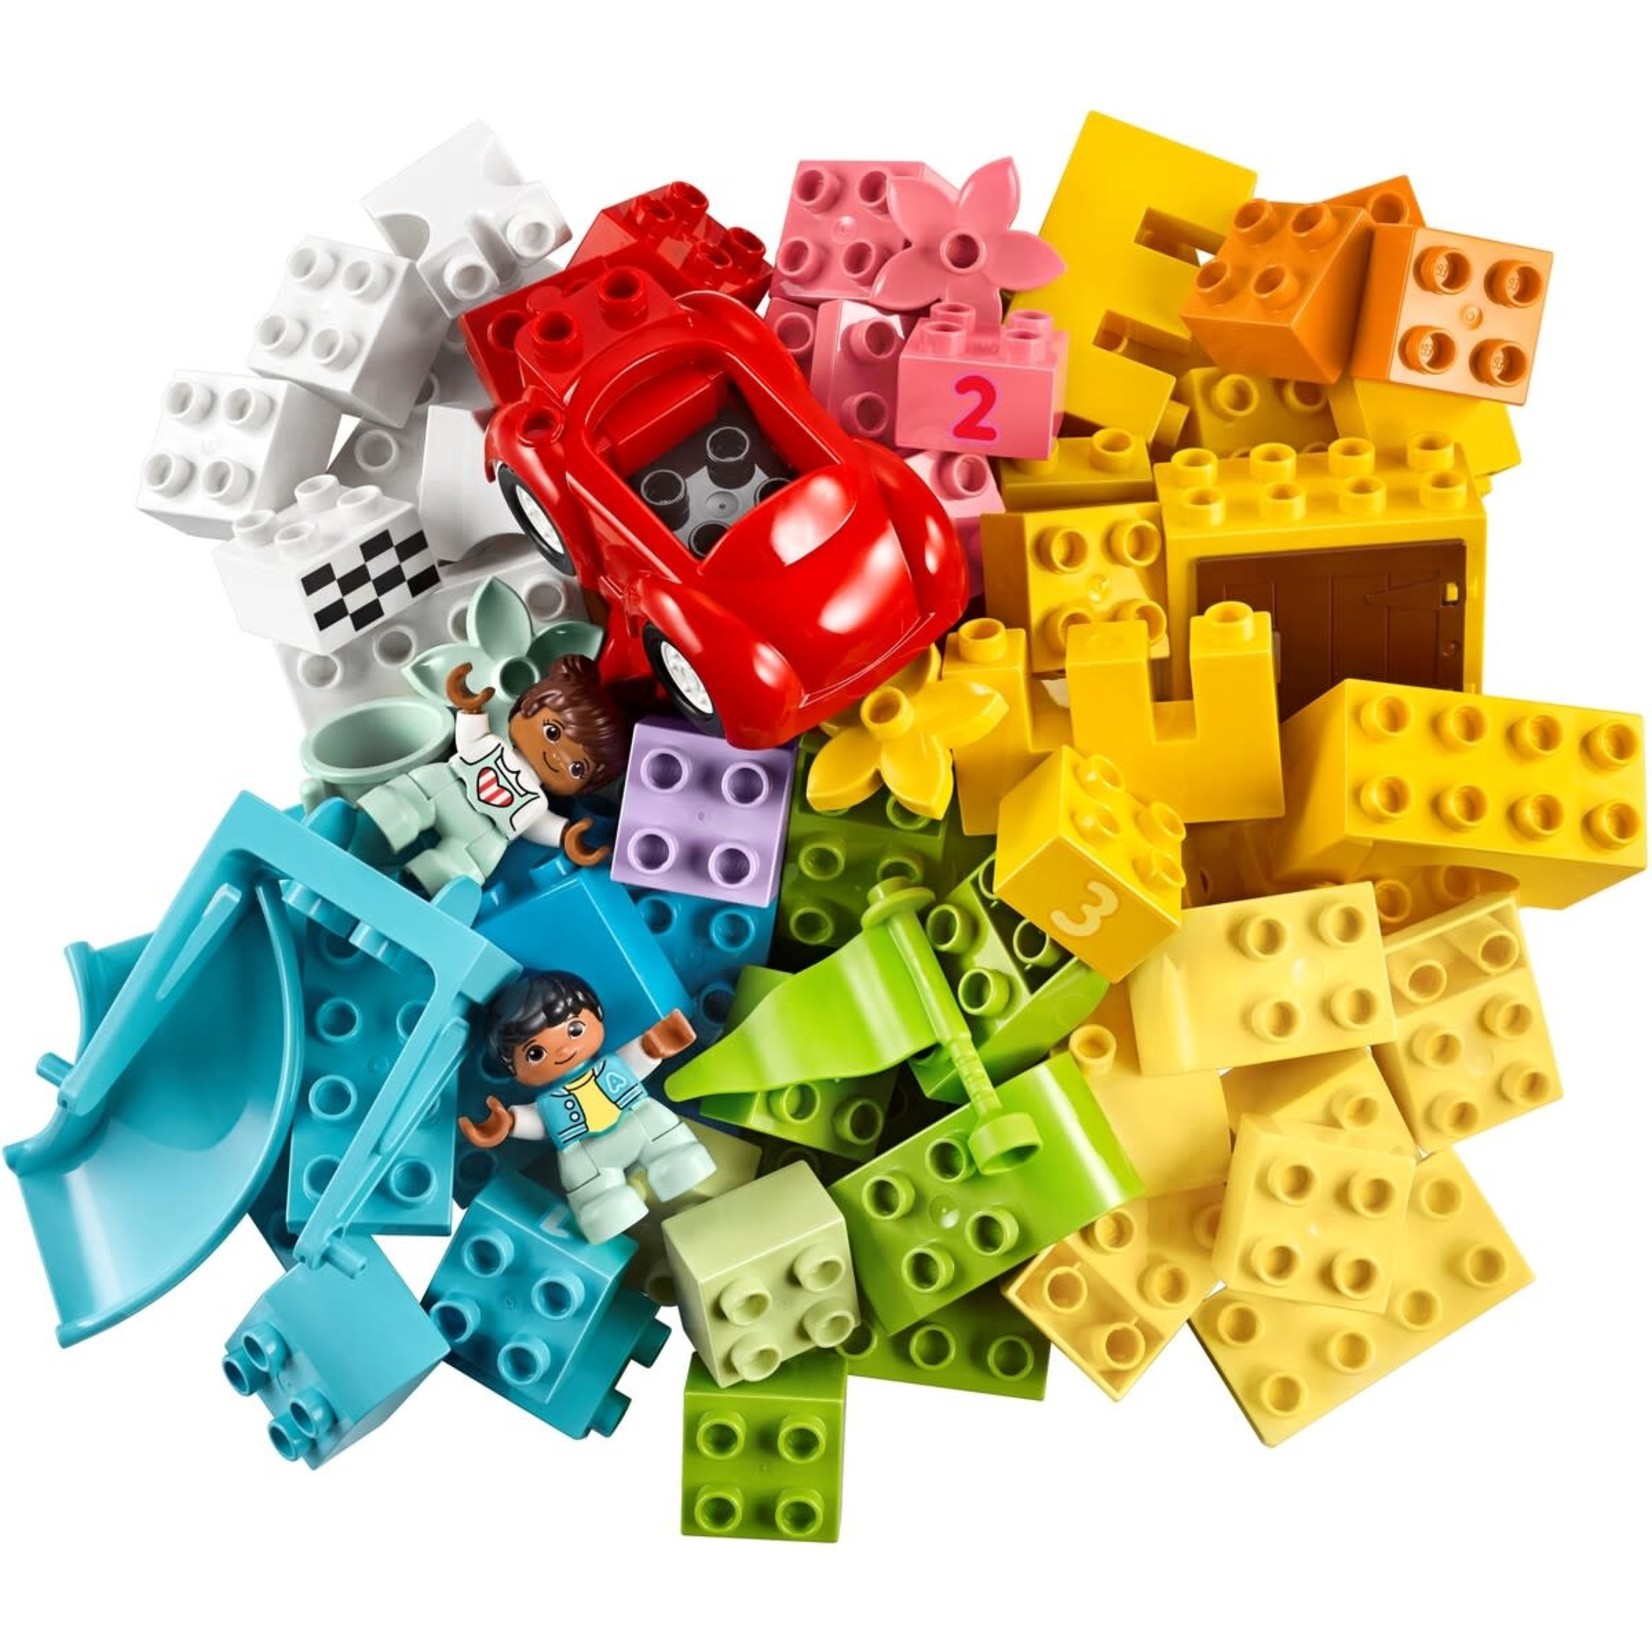 LEGO LEGO Duplo Brick Box (65 Pieces)